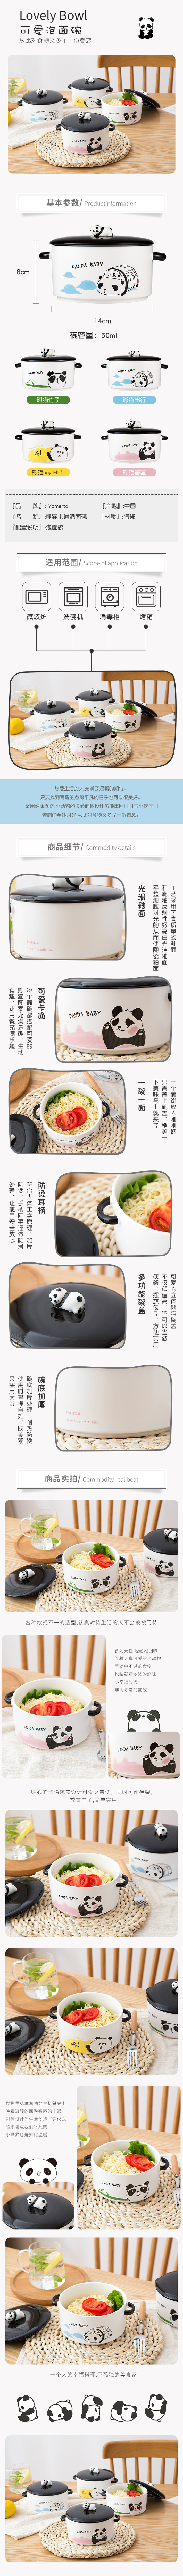 淘宝美工燕子子卡通创意熊猫泡面碗带盖双耳陶瓷碗可爱学生方便面碗汤碗详情页作品